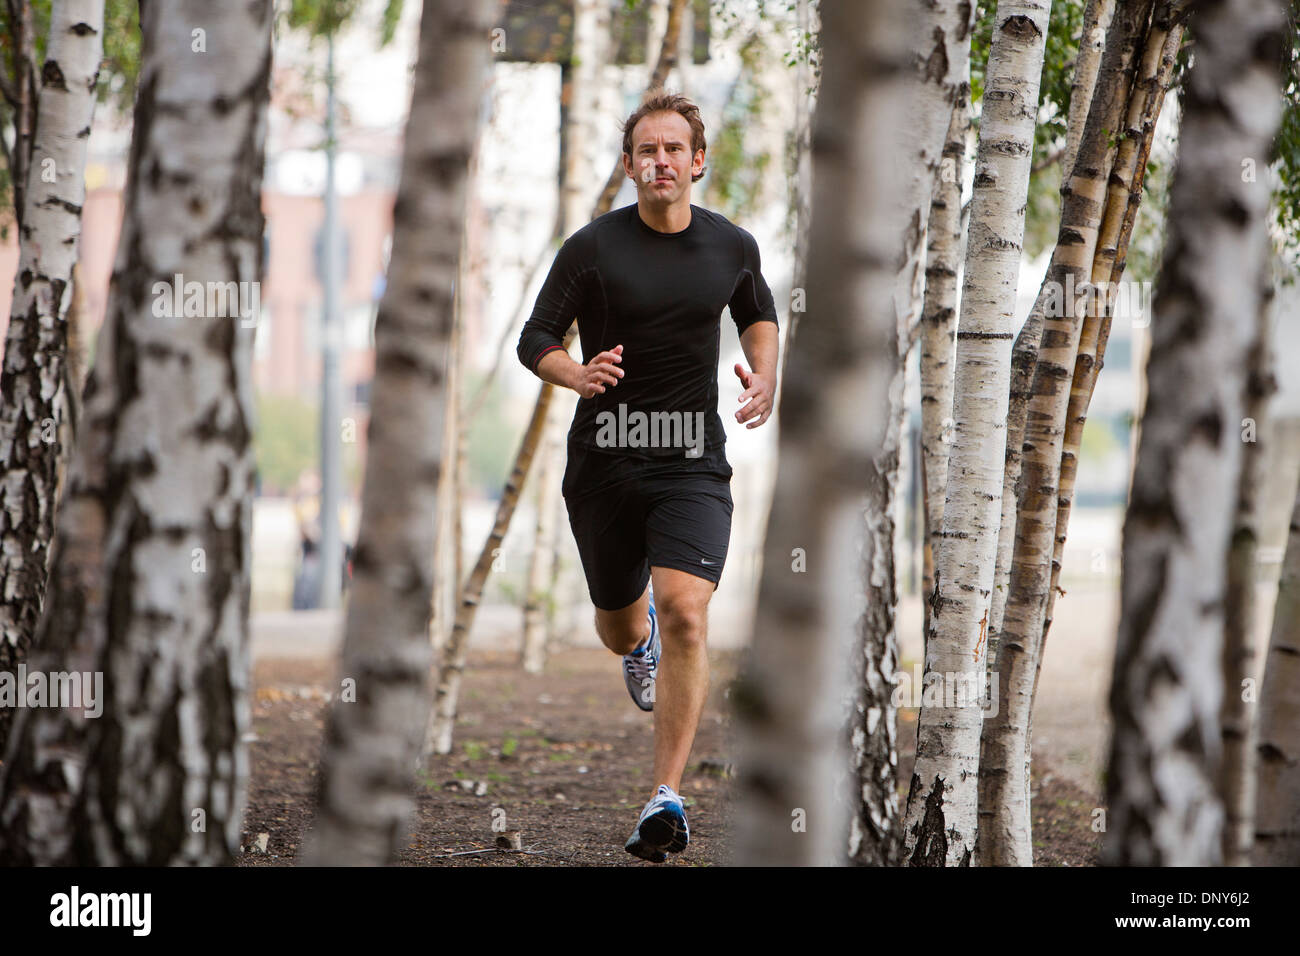 Gary randonnées, entraîneur personnel à Londres, Royaume-Uni, garder l'ajustement par le jogging à travers la ville. Banque D'Images